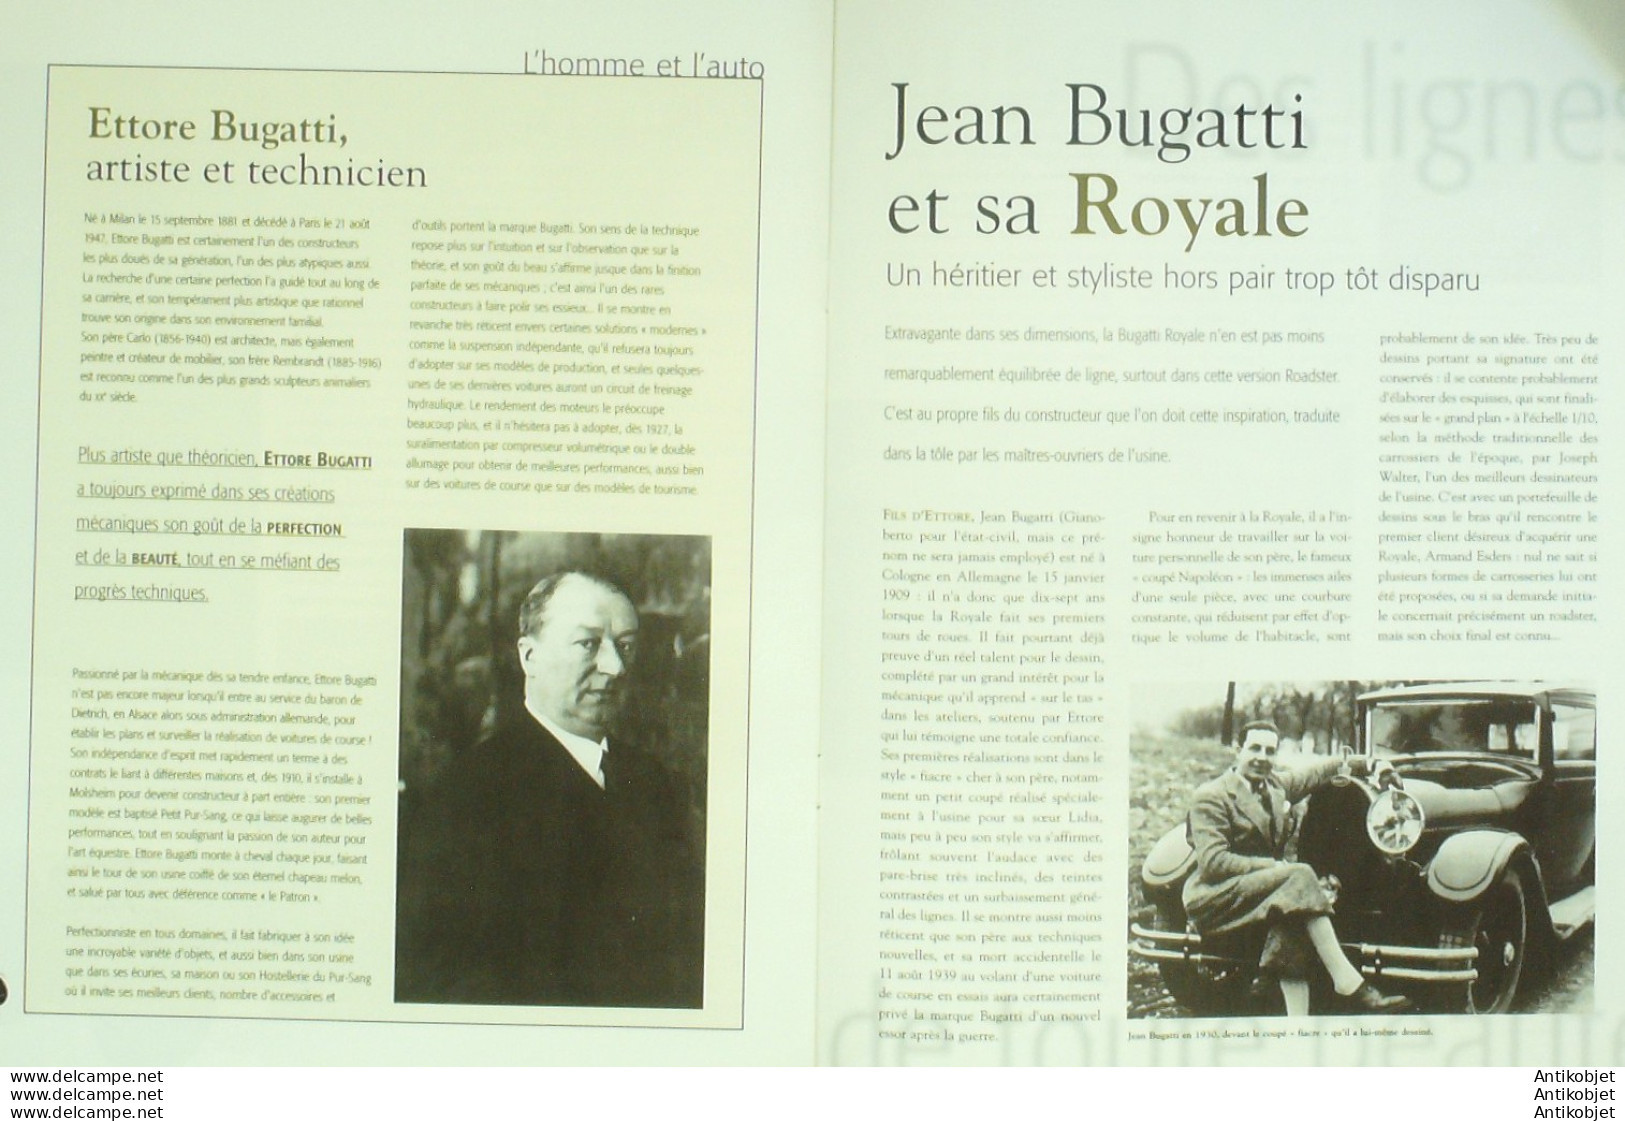 Bugatti Royale Type 41 1927 Cabriolet Esders édition Hachette - Histoire